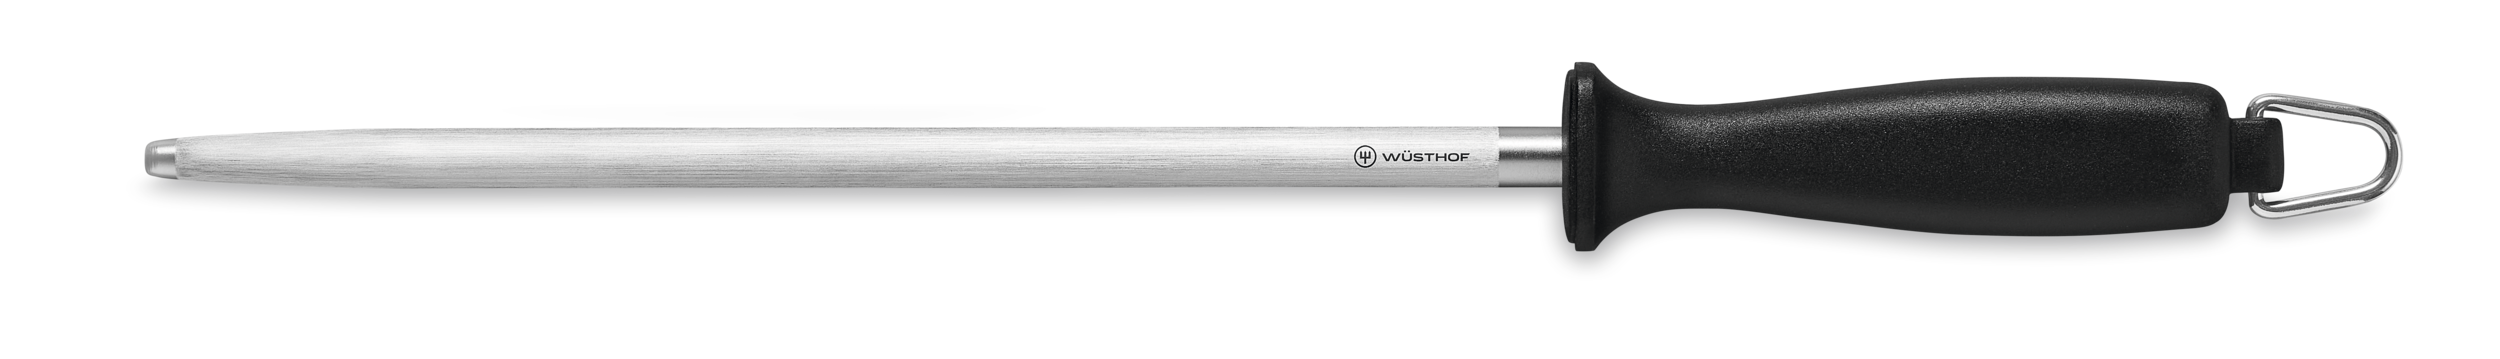 Wüsthof Classic Honing Steel, Knife Sharpener